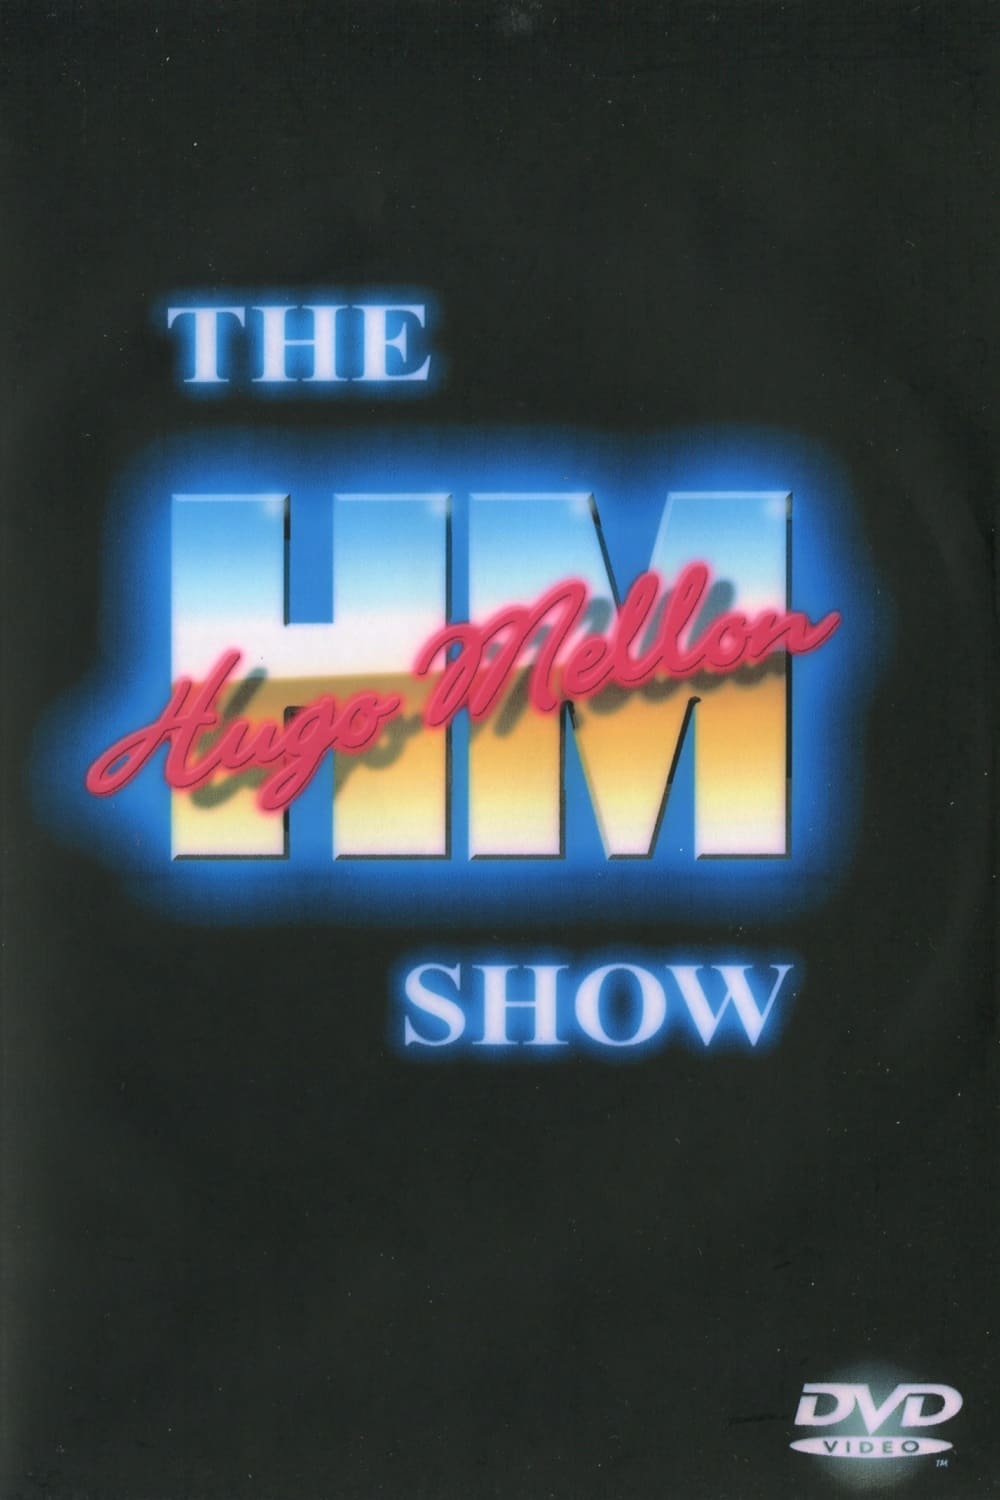 The Hugo Mellon Show